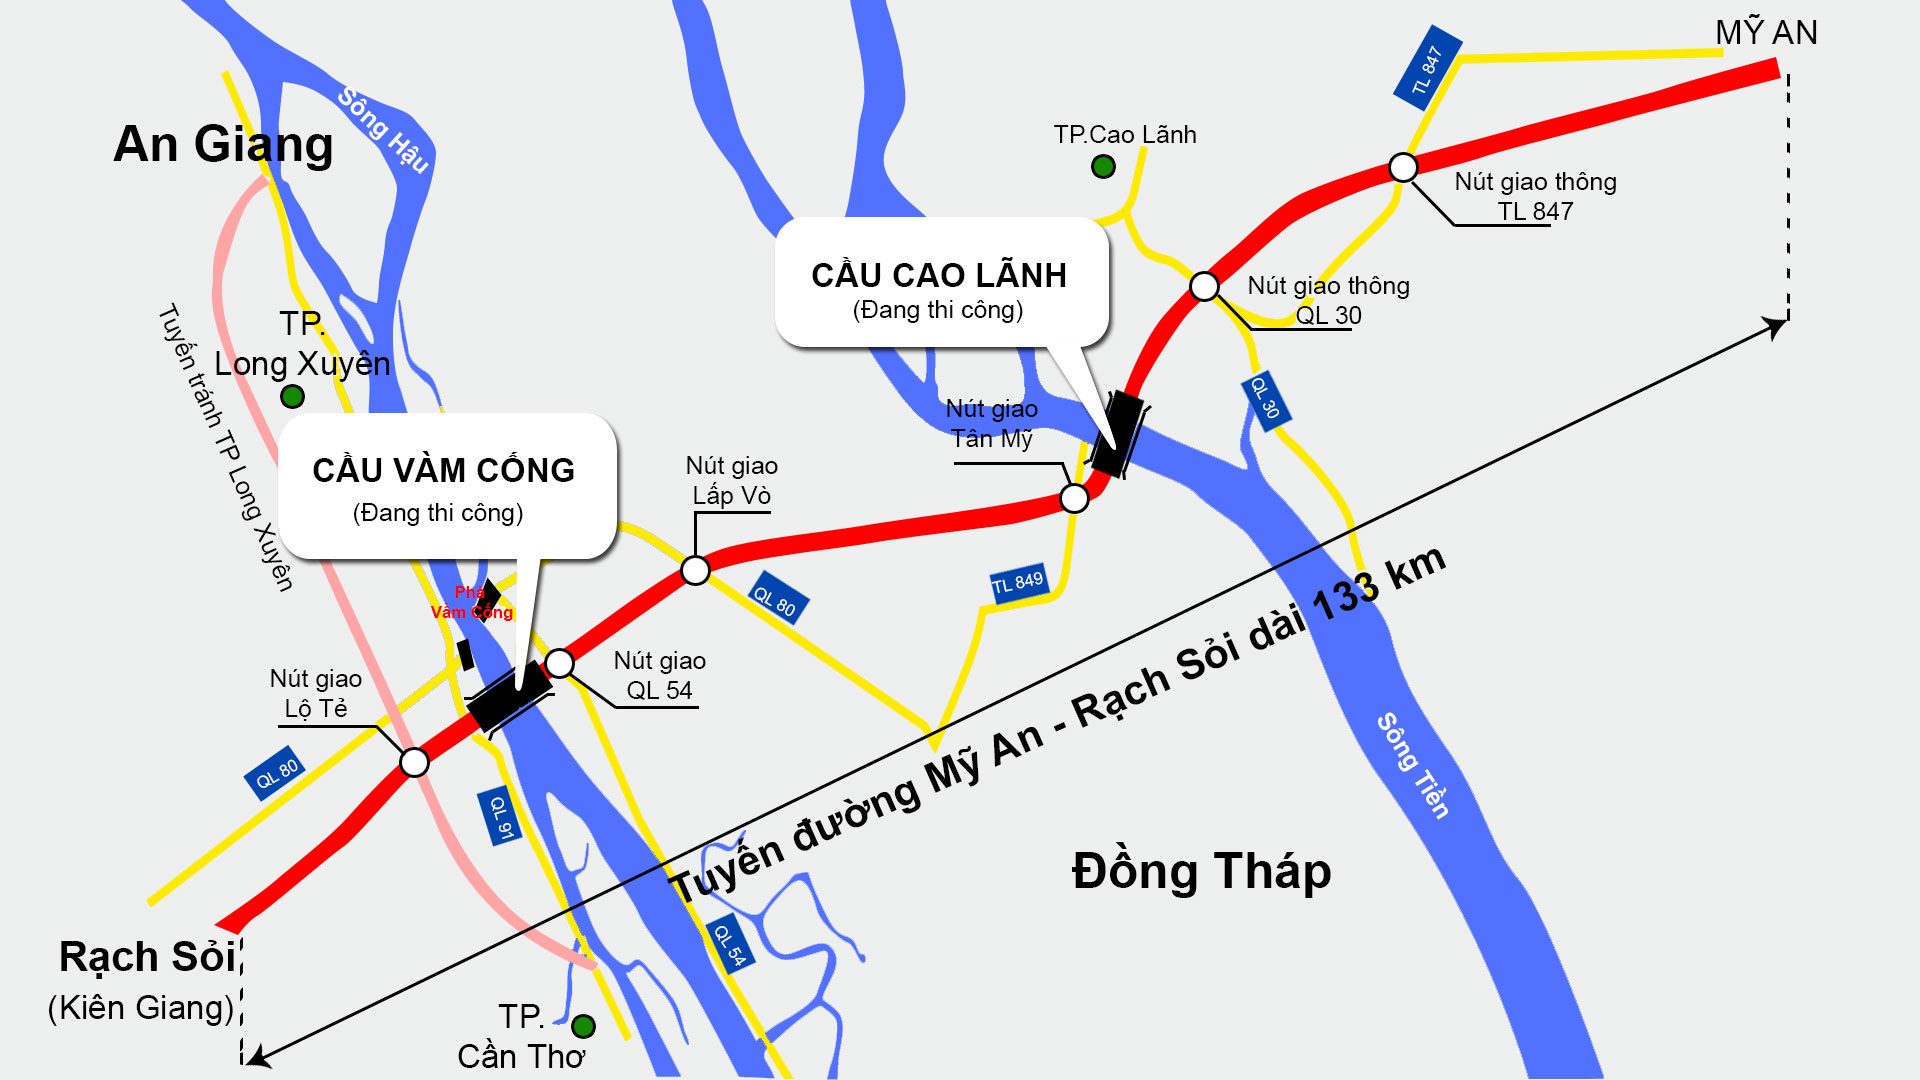 Tuyến cao tốc Bắc-Nam phía Tây: Tuyến cao tốc Bắc-Nam phía Tây là một trong những tuyến đường quan trọng nhất của Việt Nam. Với mục đích kết nối các tỉnh thành phía Tây với các thành phố lớn phía Nam, đường cao tốc này đã mang lại sự tiện ích và phát triển cho địa phương. Hãy cùng khám phá và trải nghiệm những tiên ích của tuyến đường này.